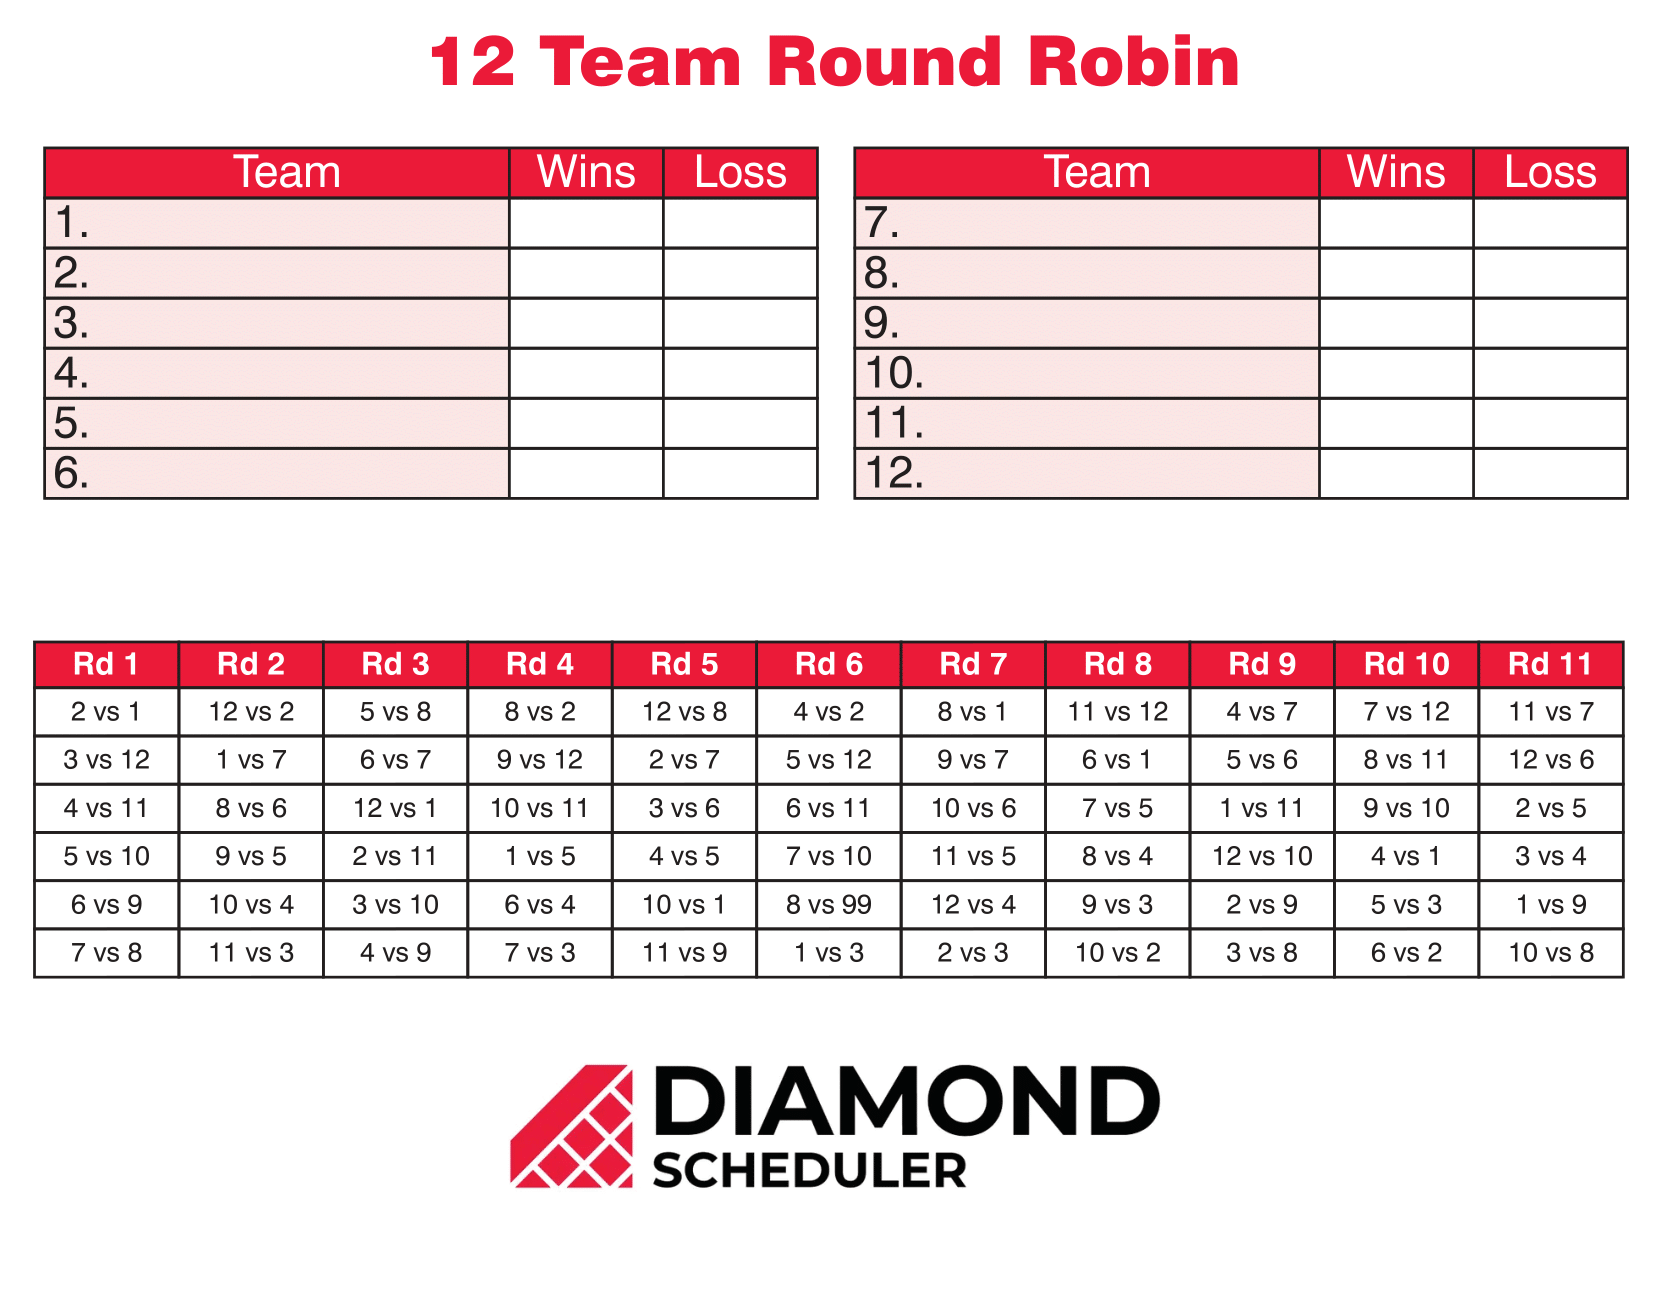 Team: Round 12